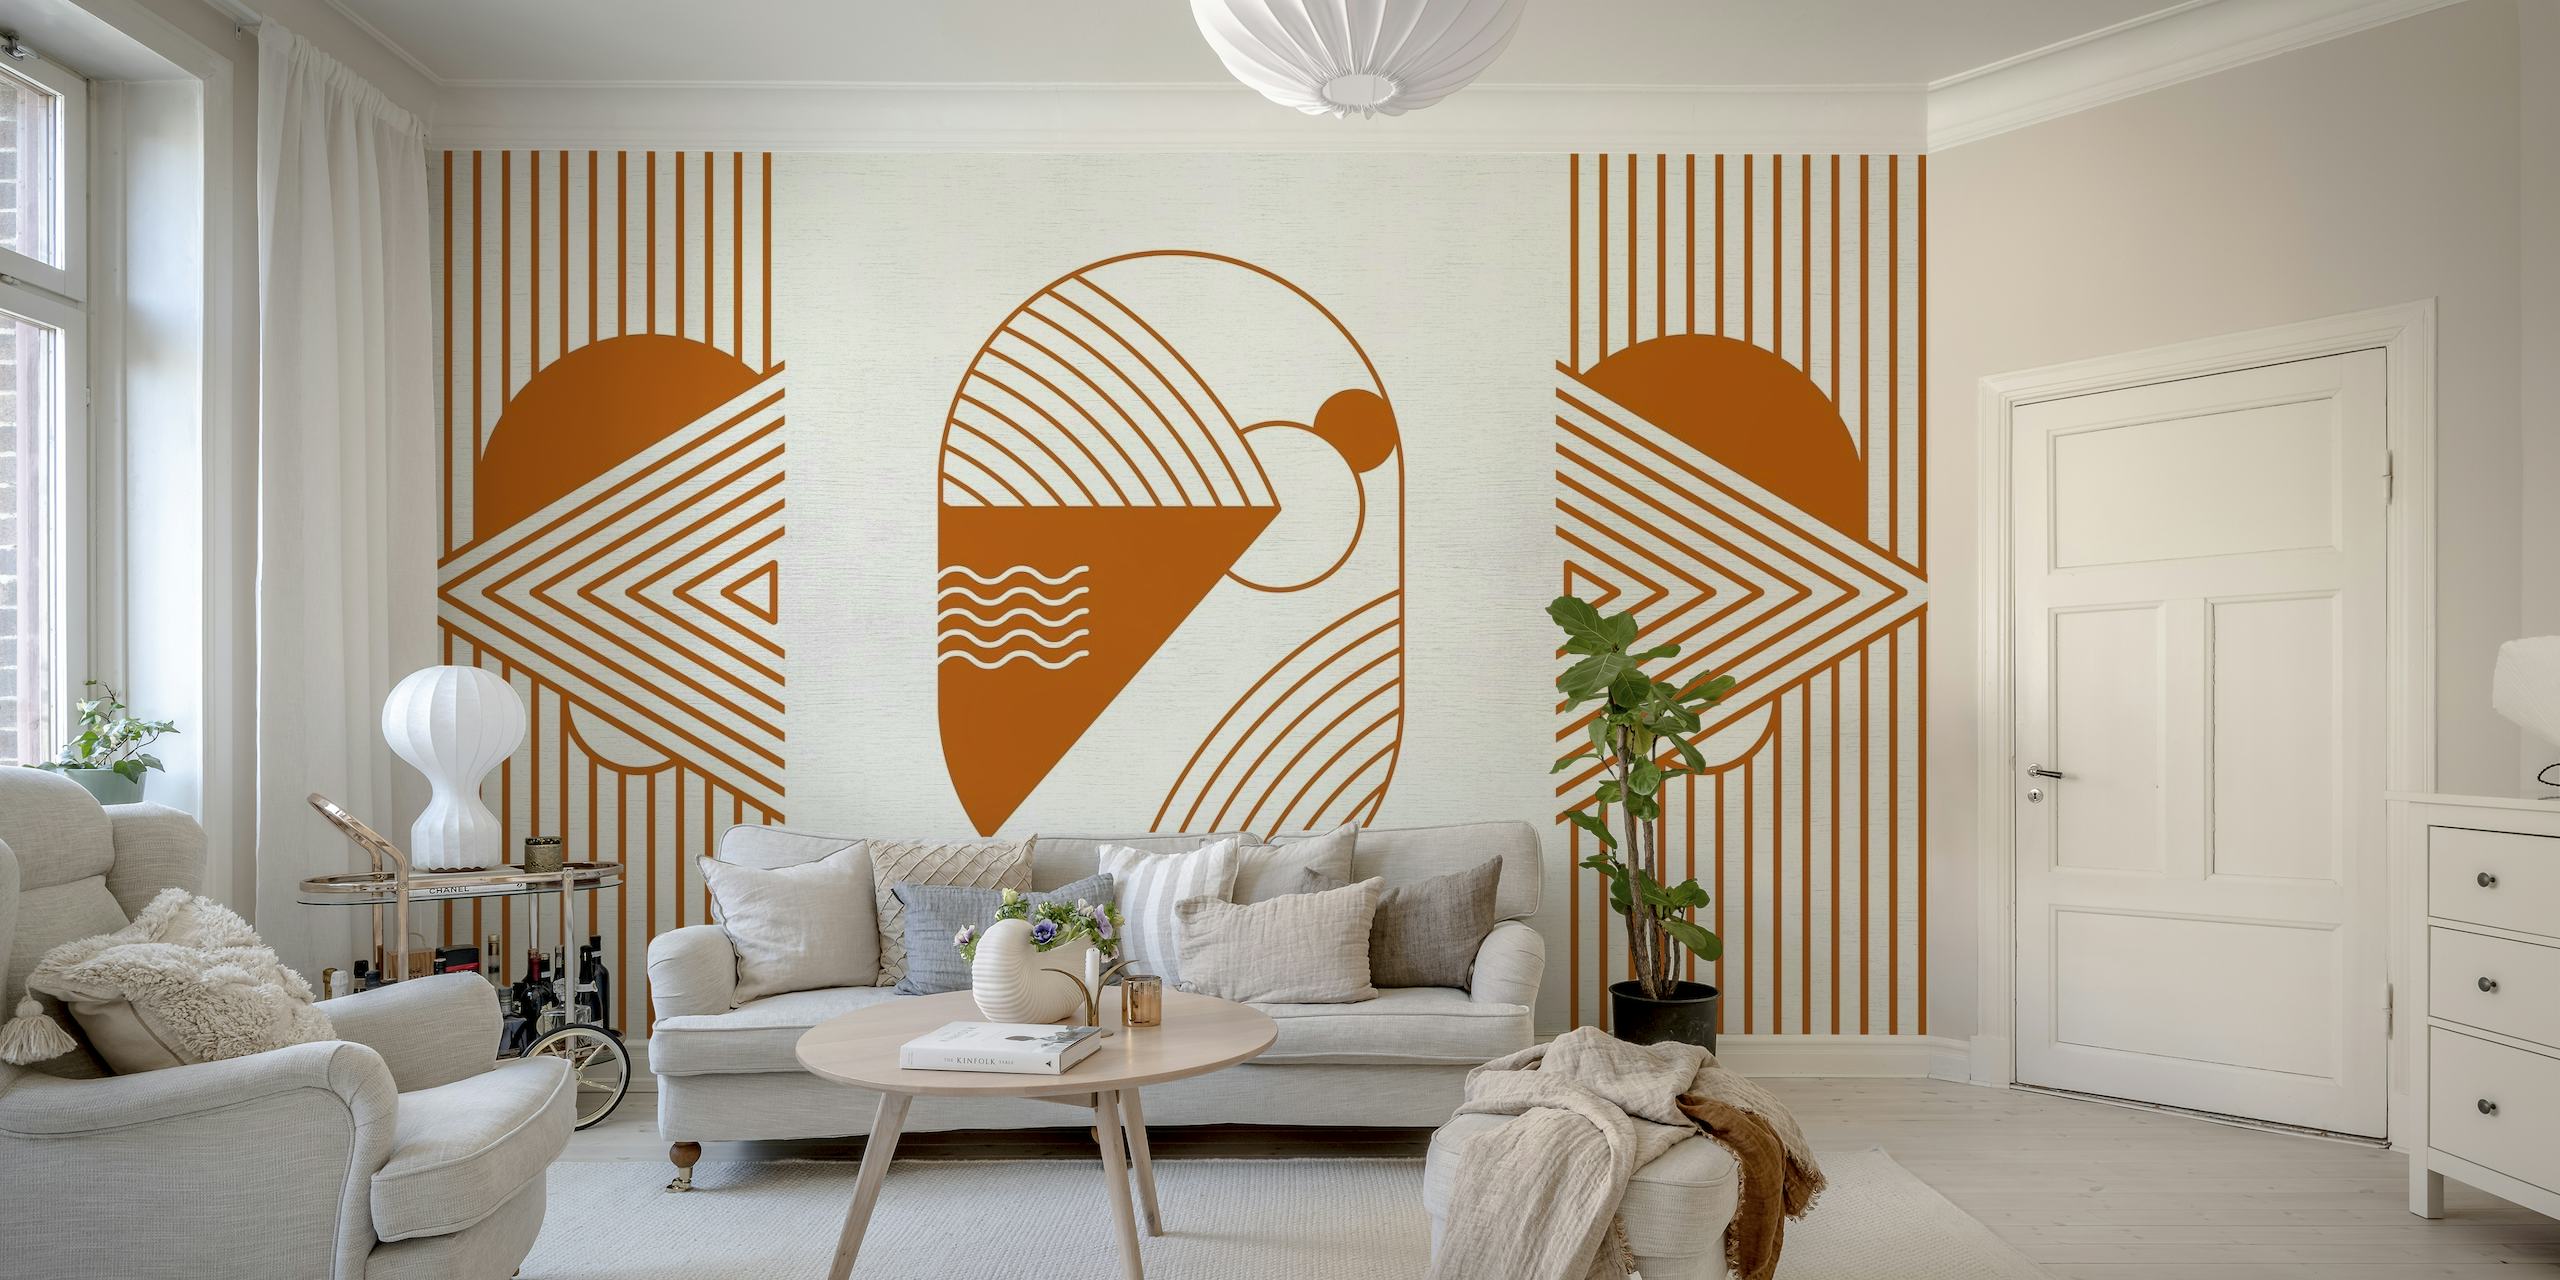 Retro-geïnspireerde kosmische droomverkenner muurschildering in oranje roesttinten met geometrische vormen en ruimtemotieven.